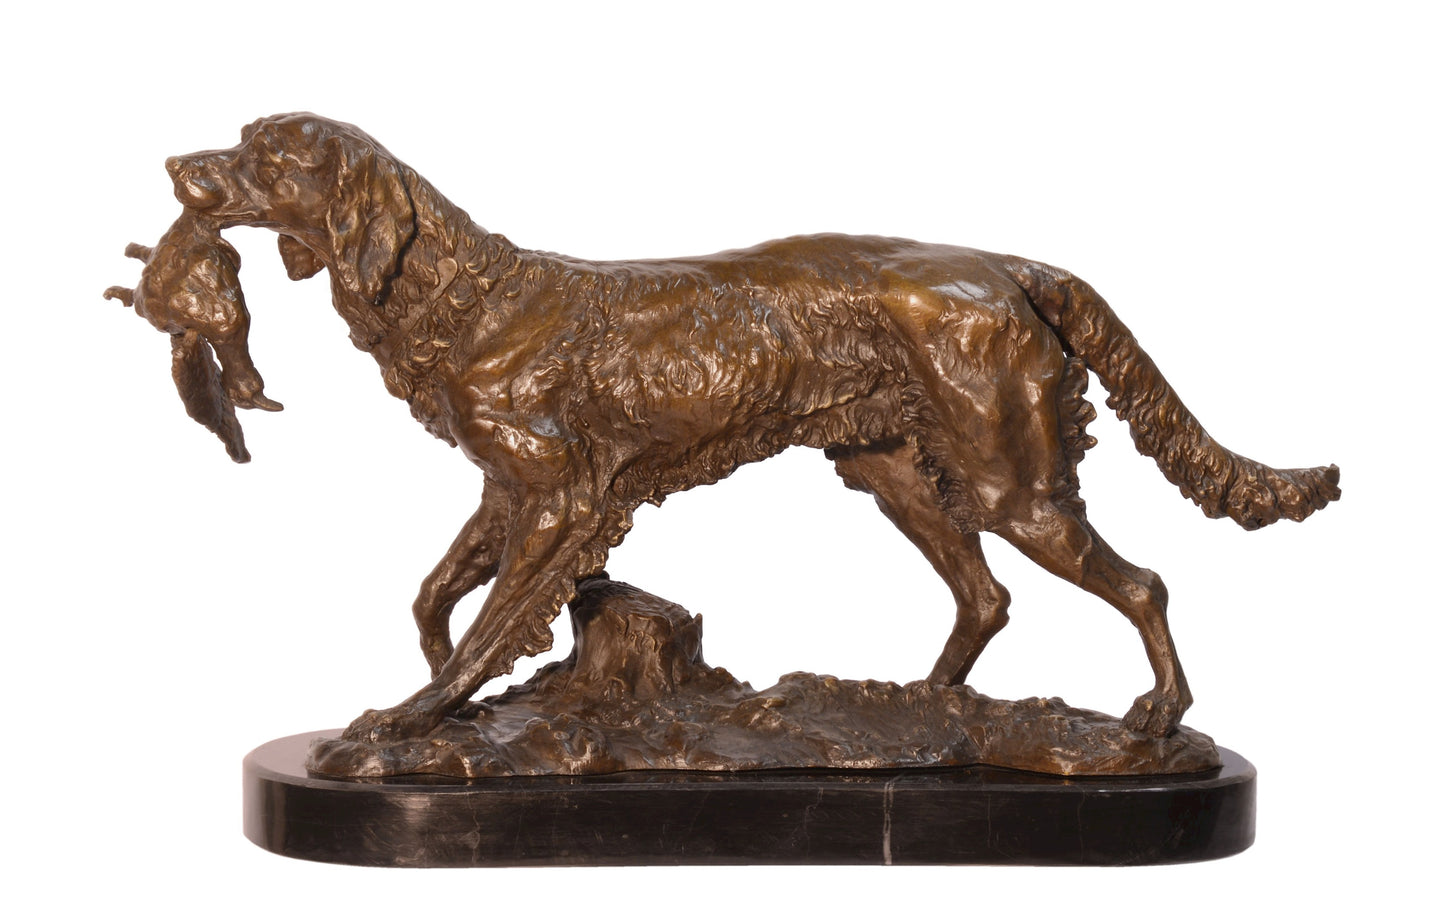 Bronzen beeld van een jachthond met een geschoten eend als prooi in zijn bek